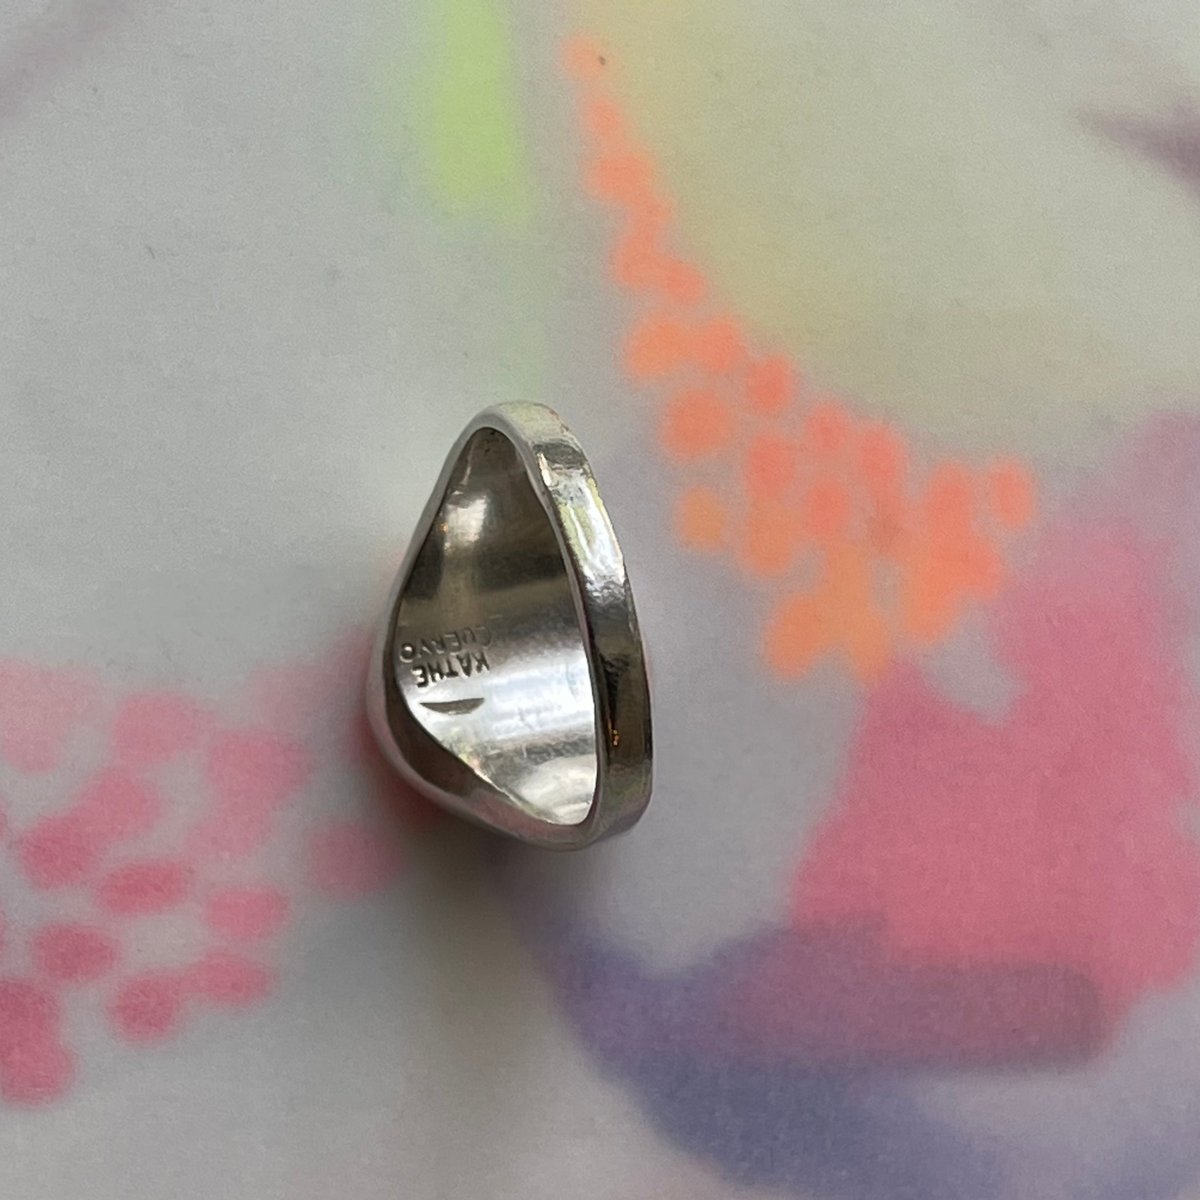 Image of pink dot signet ring